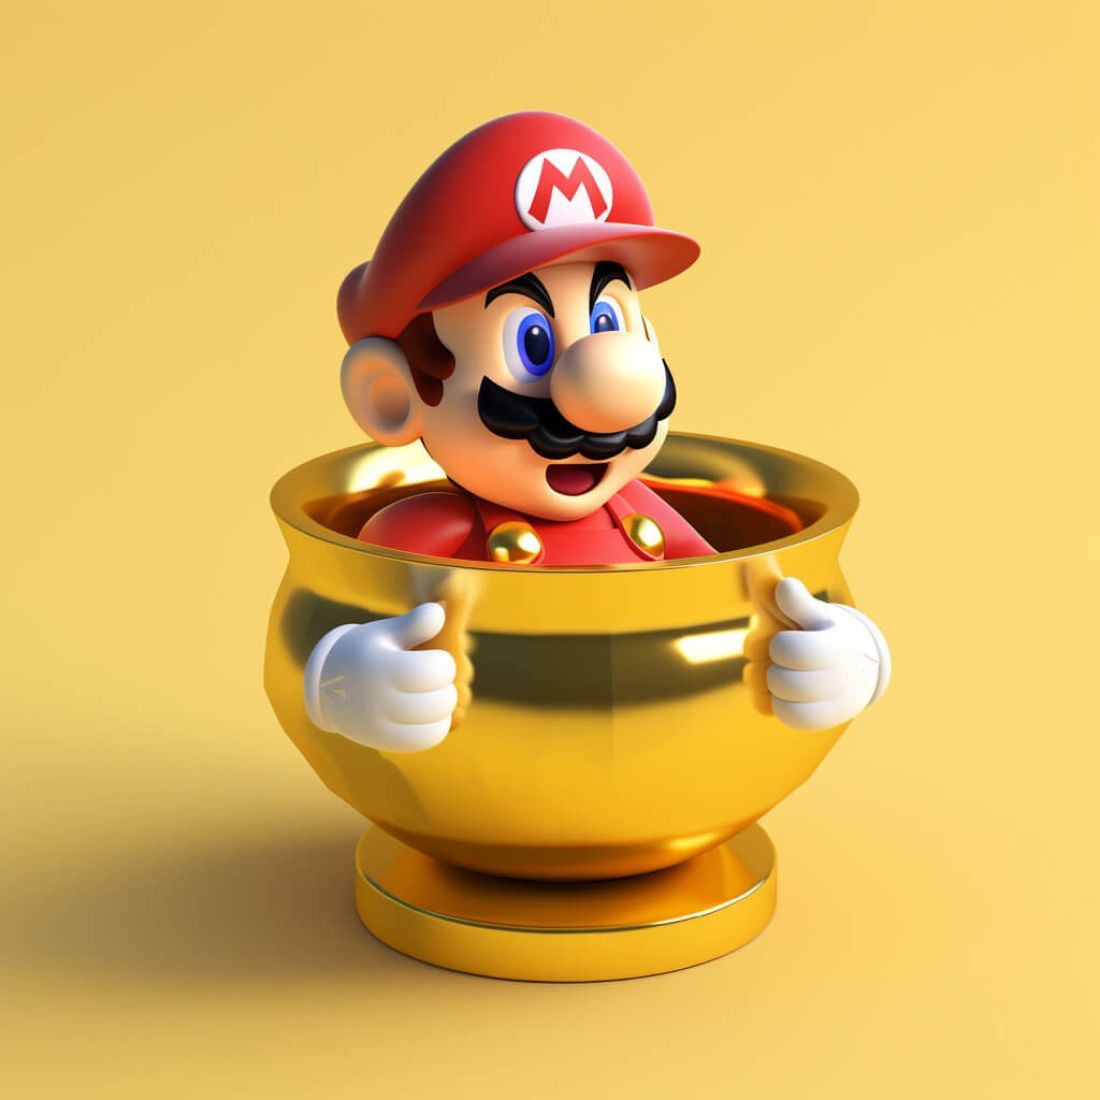 En bild på Super Mario ifrån Nintendos kända spel